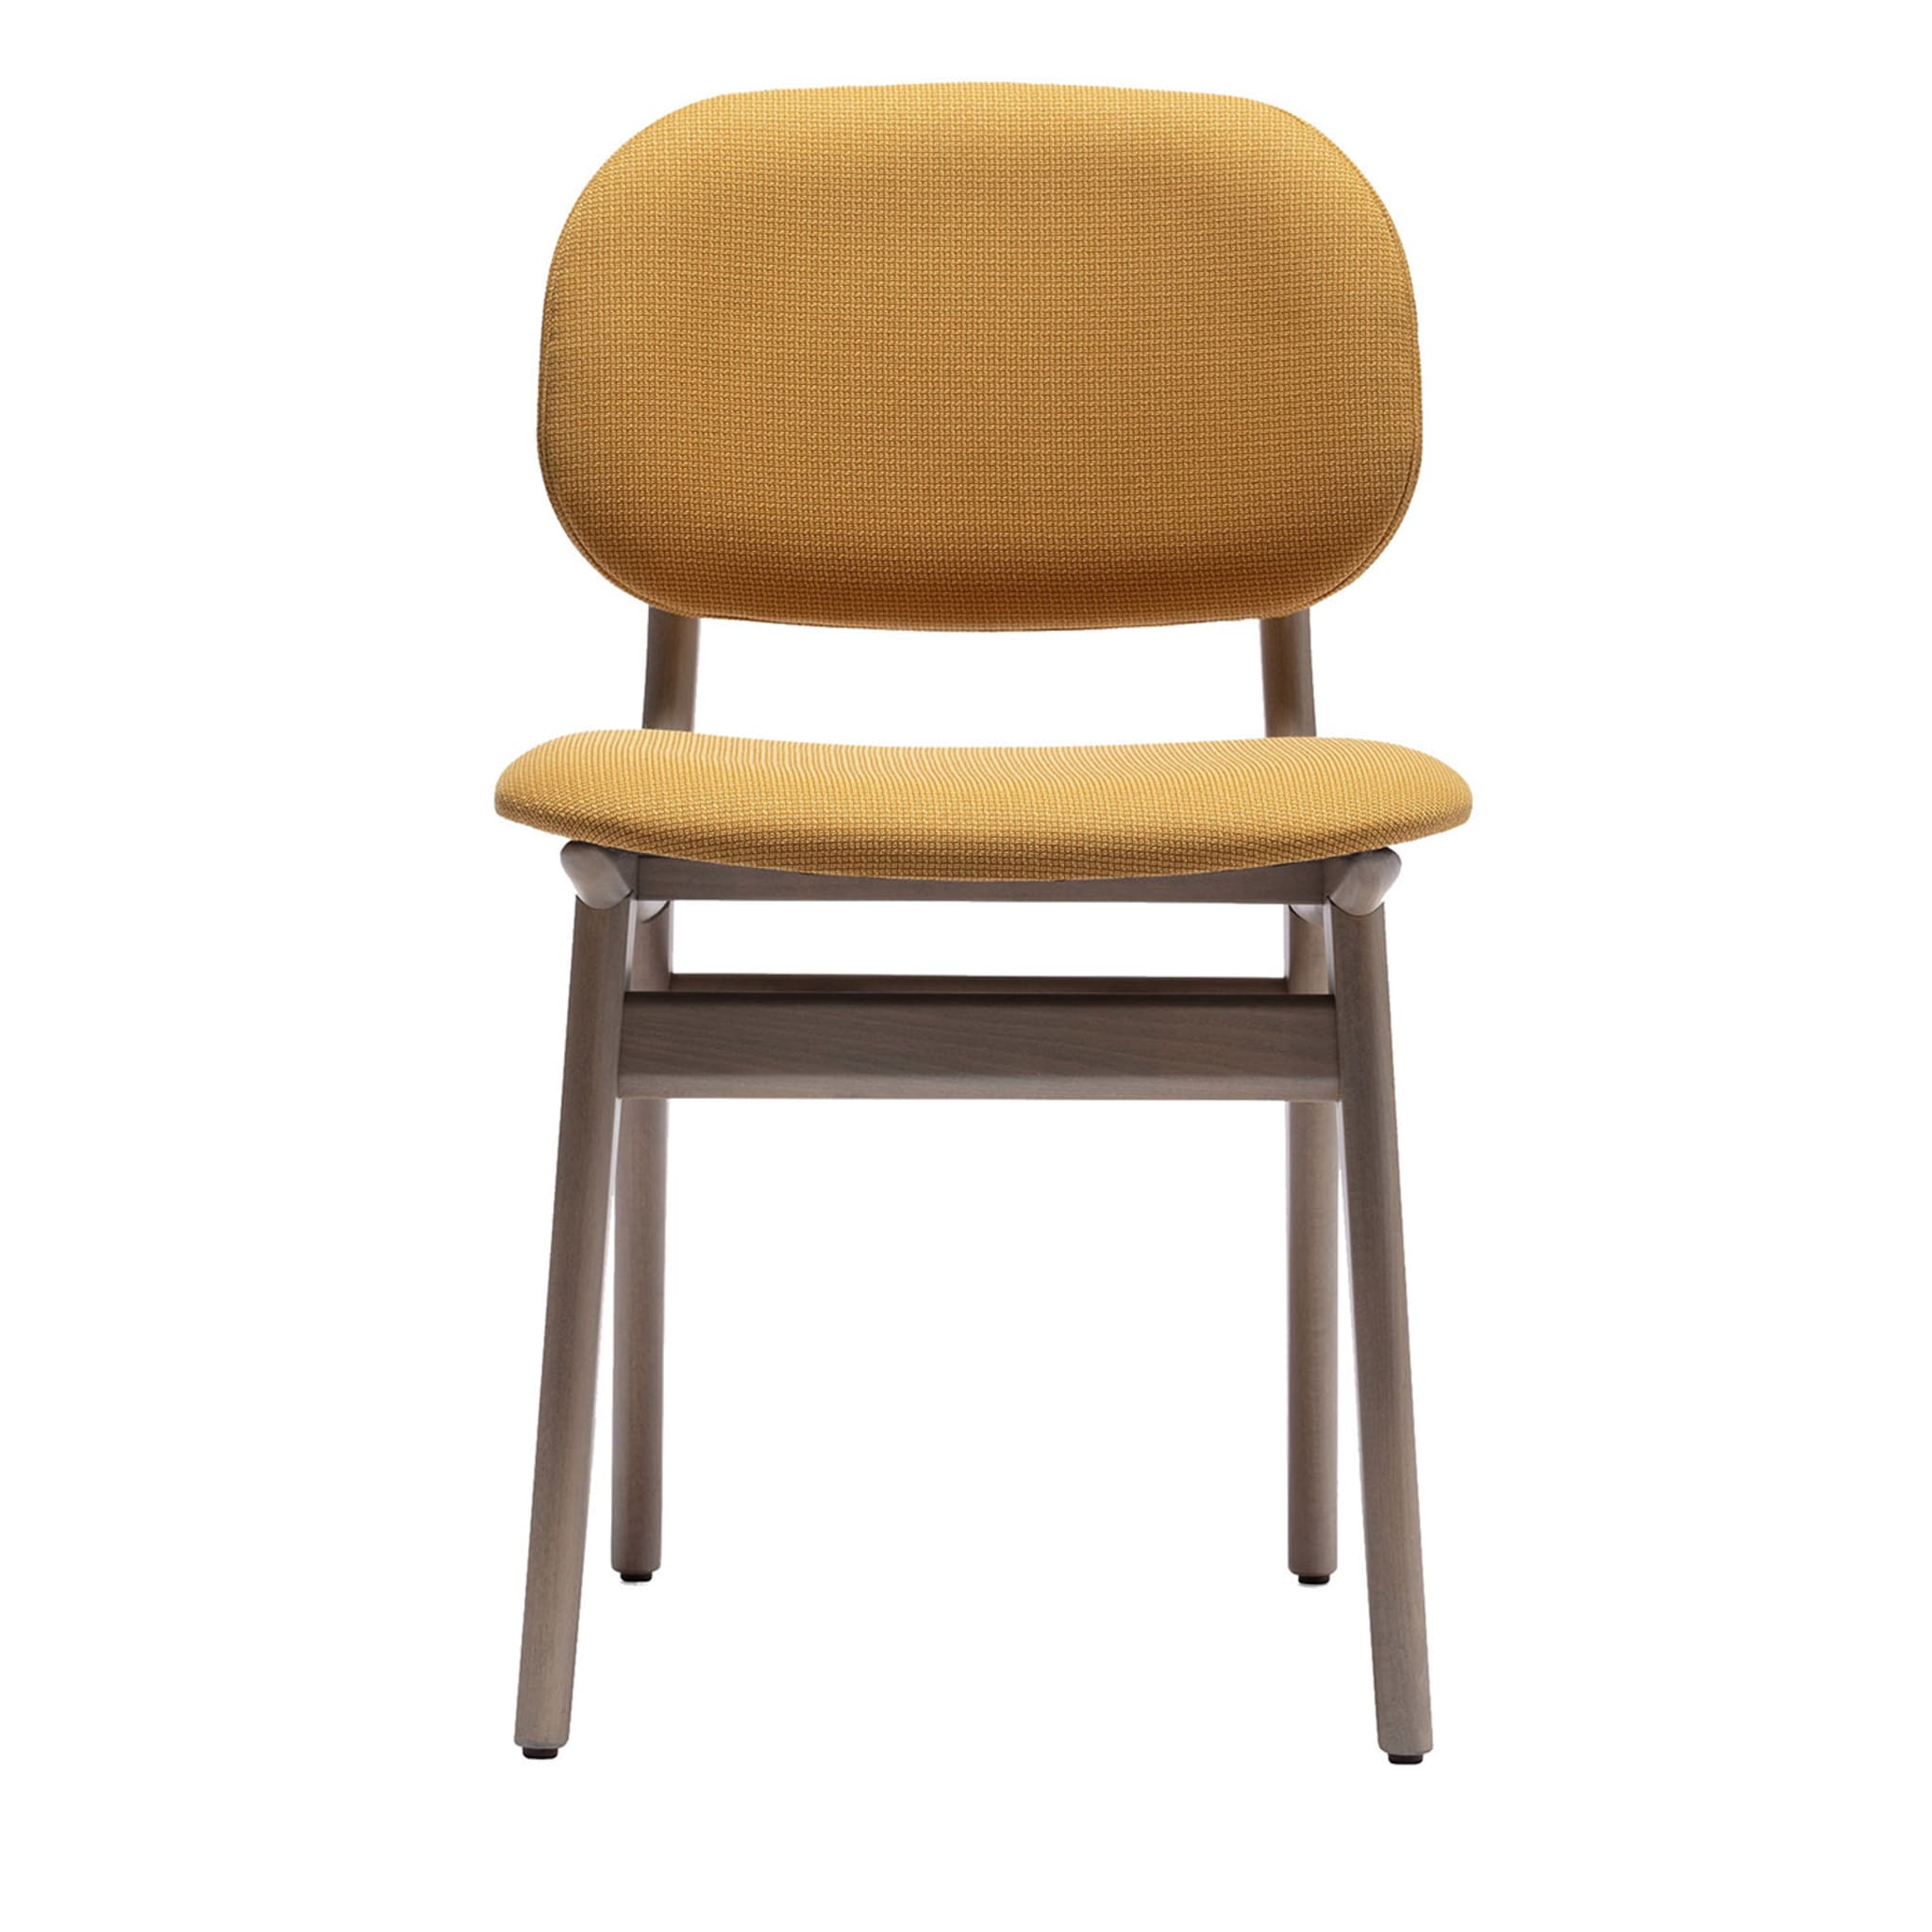 Gina Yellow Chair - Main view